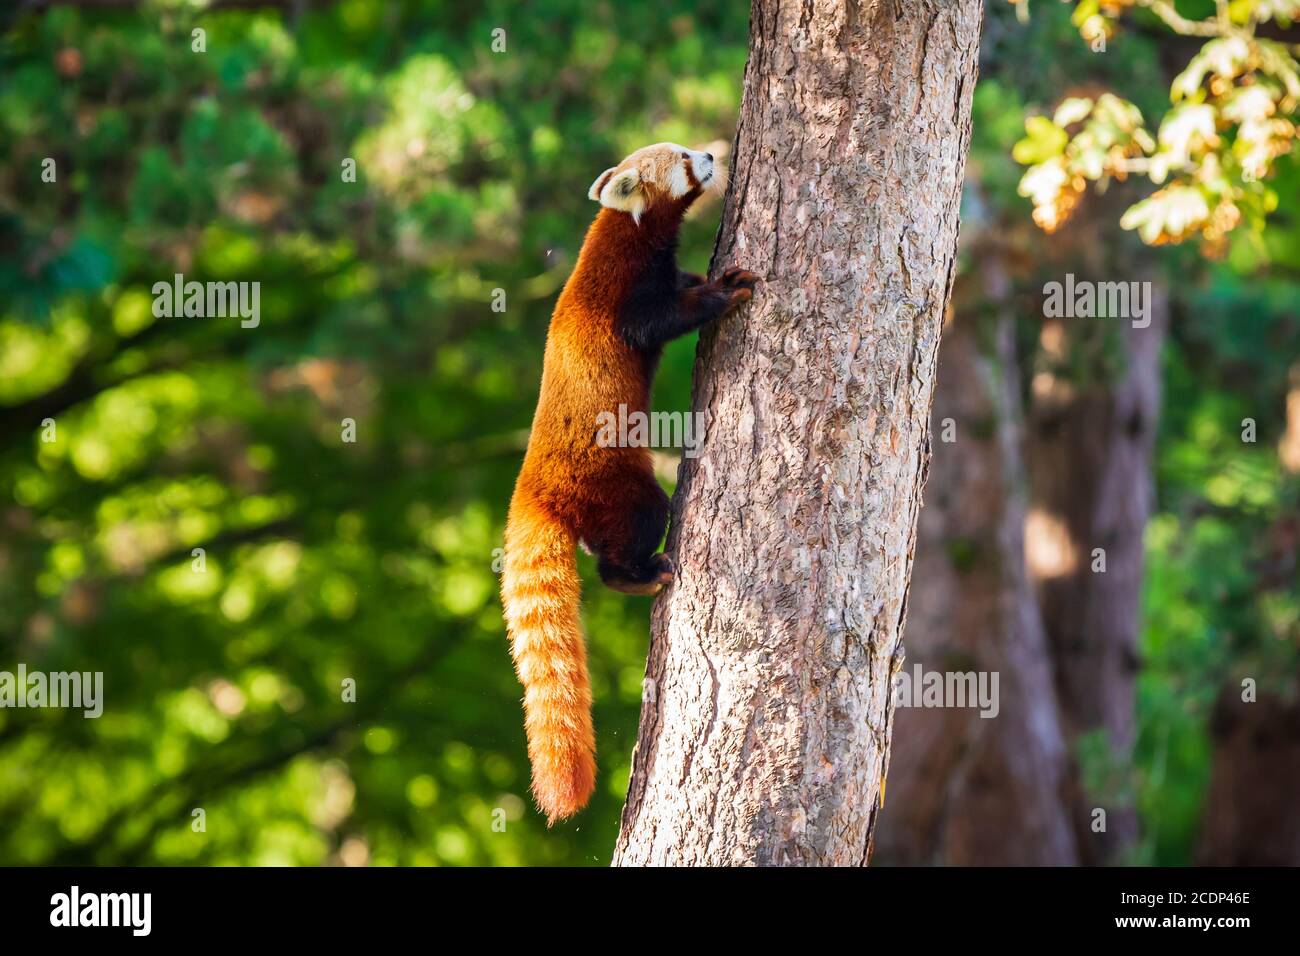 Süßer kleiner roter Panda, der in einem Baum ruht. Es handelt sich um ein kleines arboreales Säugetier, das im östlichen Himalaya und im Südwesten Chinas beheimatet ist und klassifiziert wurde Stockfoto